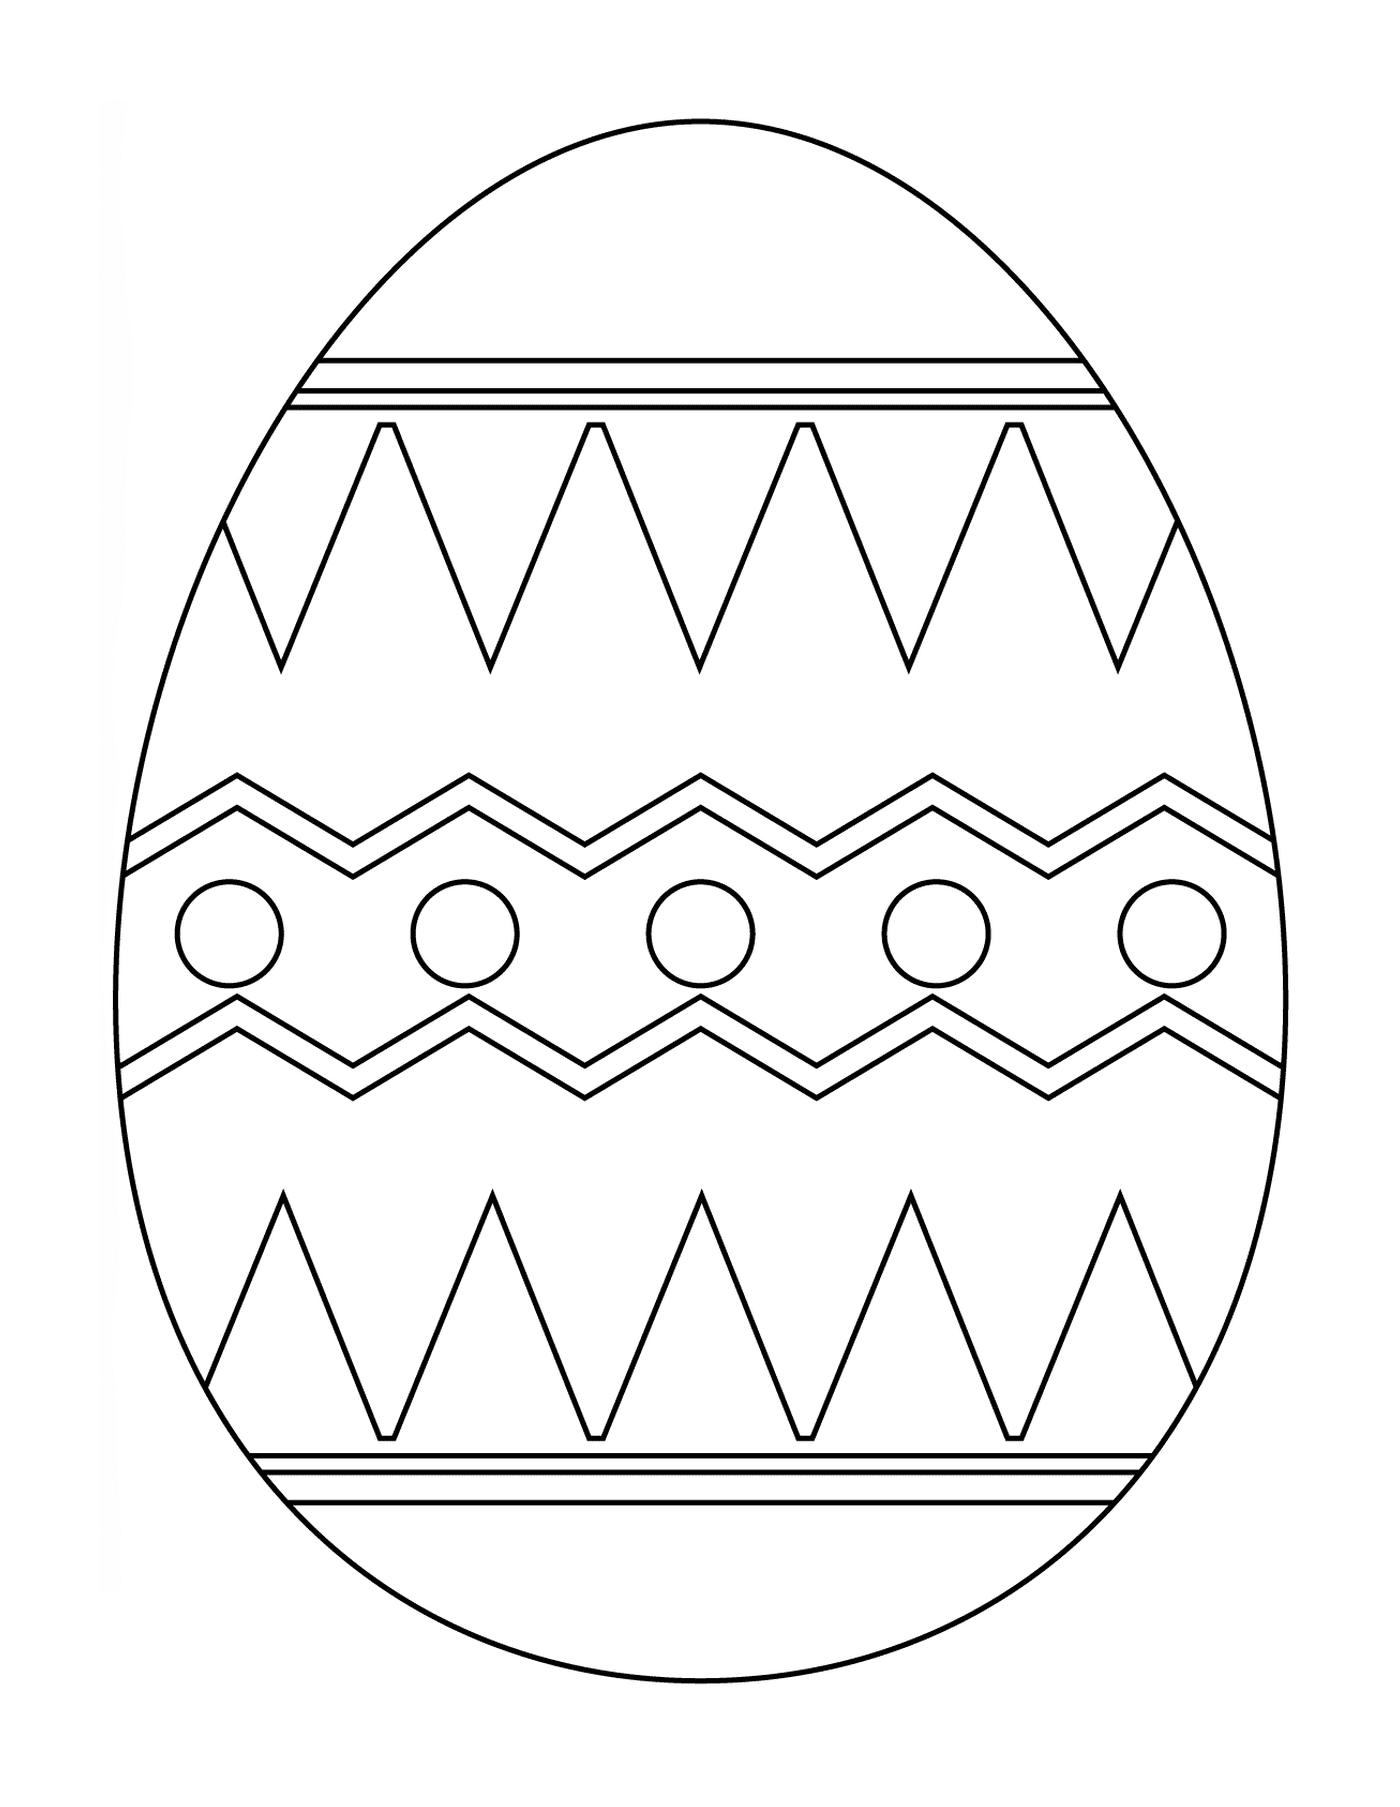  Пасхальное яйцо с аббревиатурой 5 